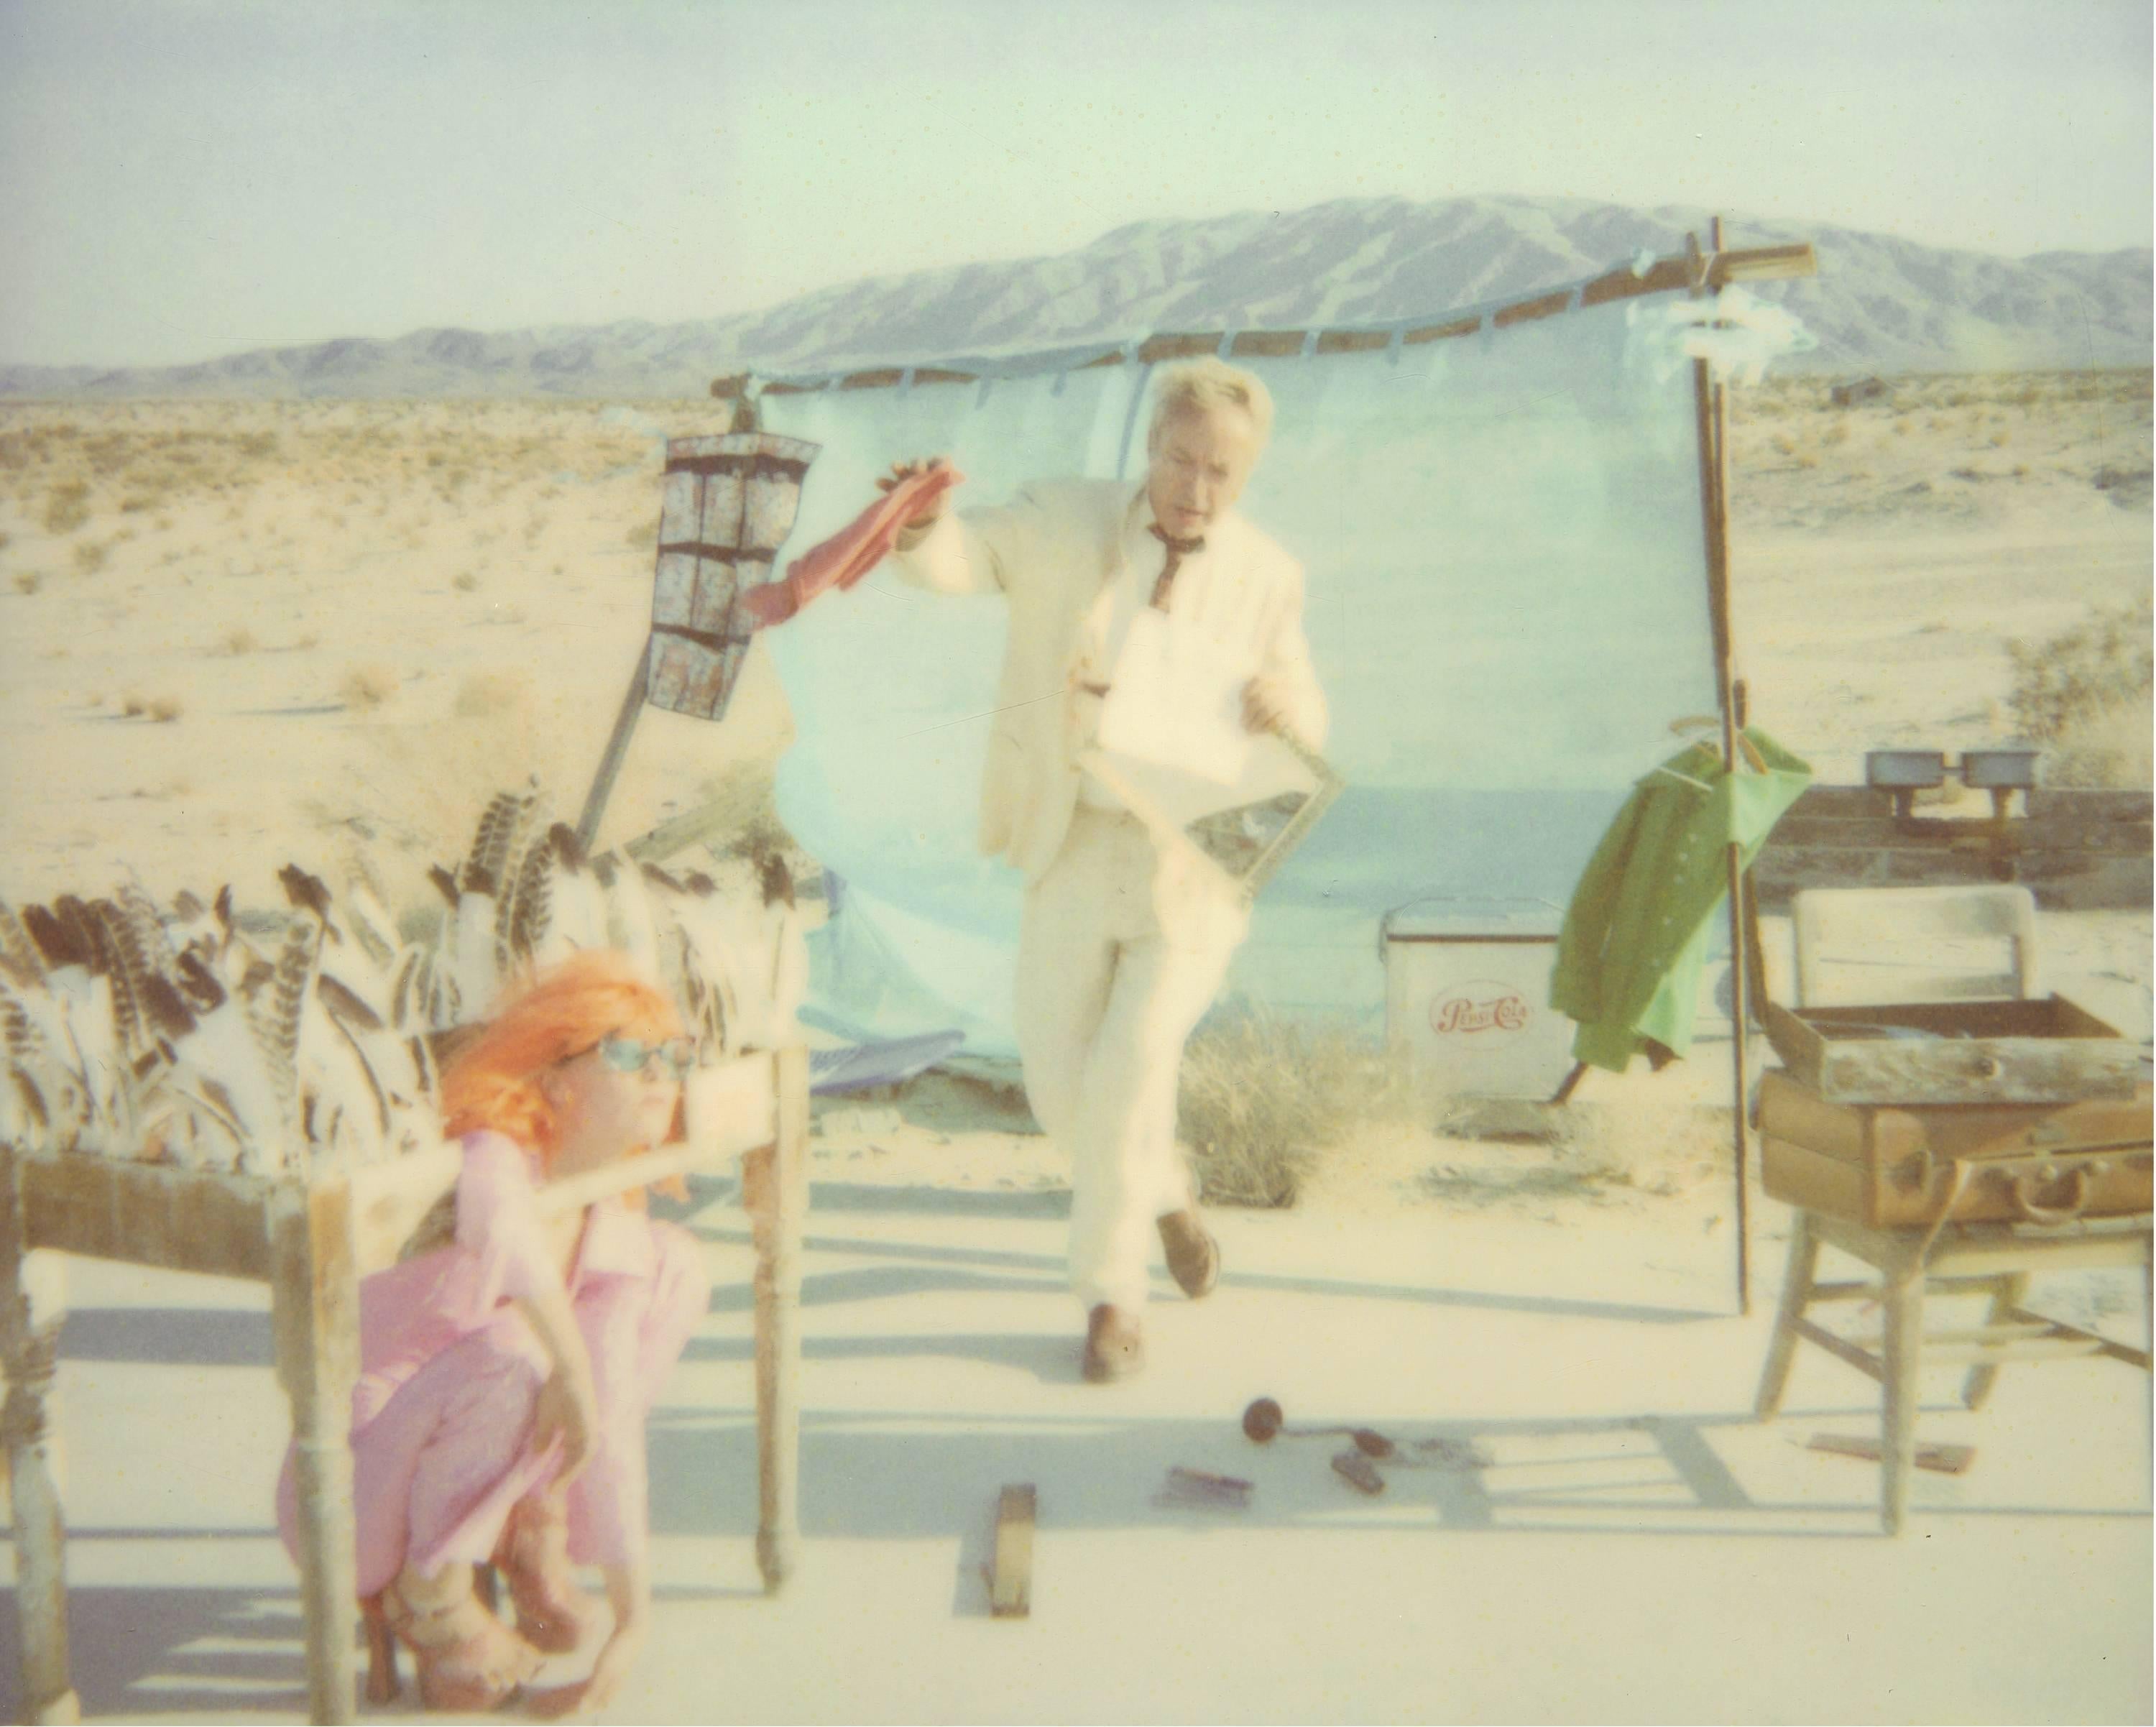 Stefanie Schneider Color Photograph - Spiegelbild (Stage of Consciosness), analog, 125x154cm - featuring Udo Kier